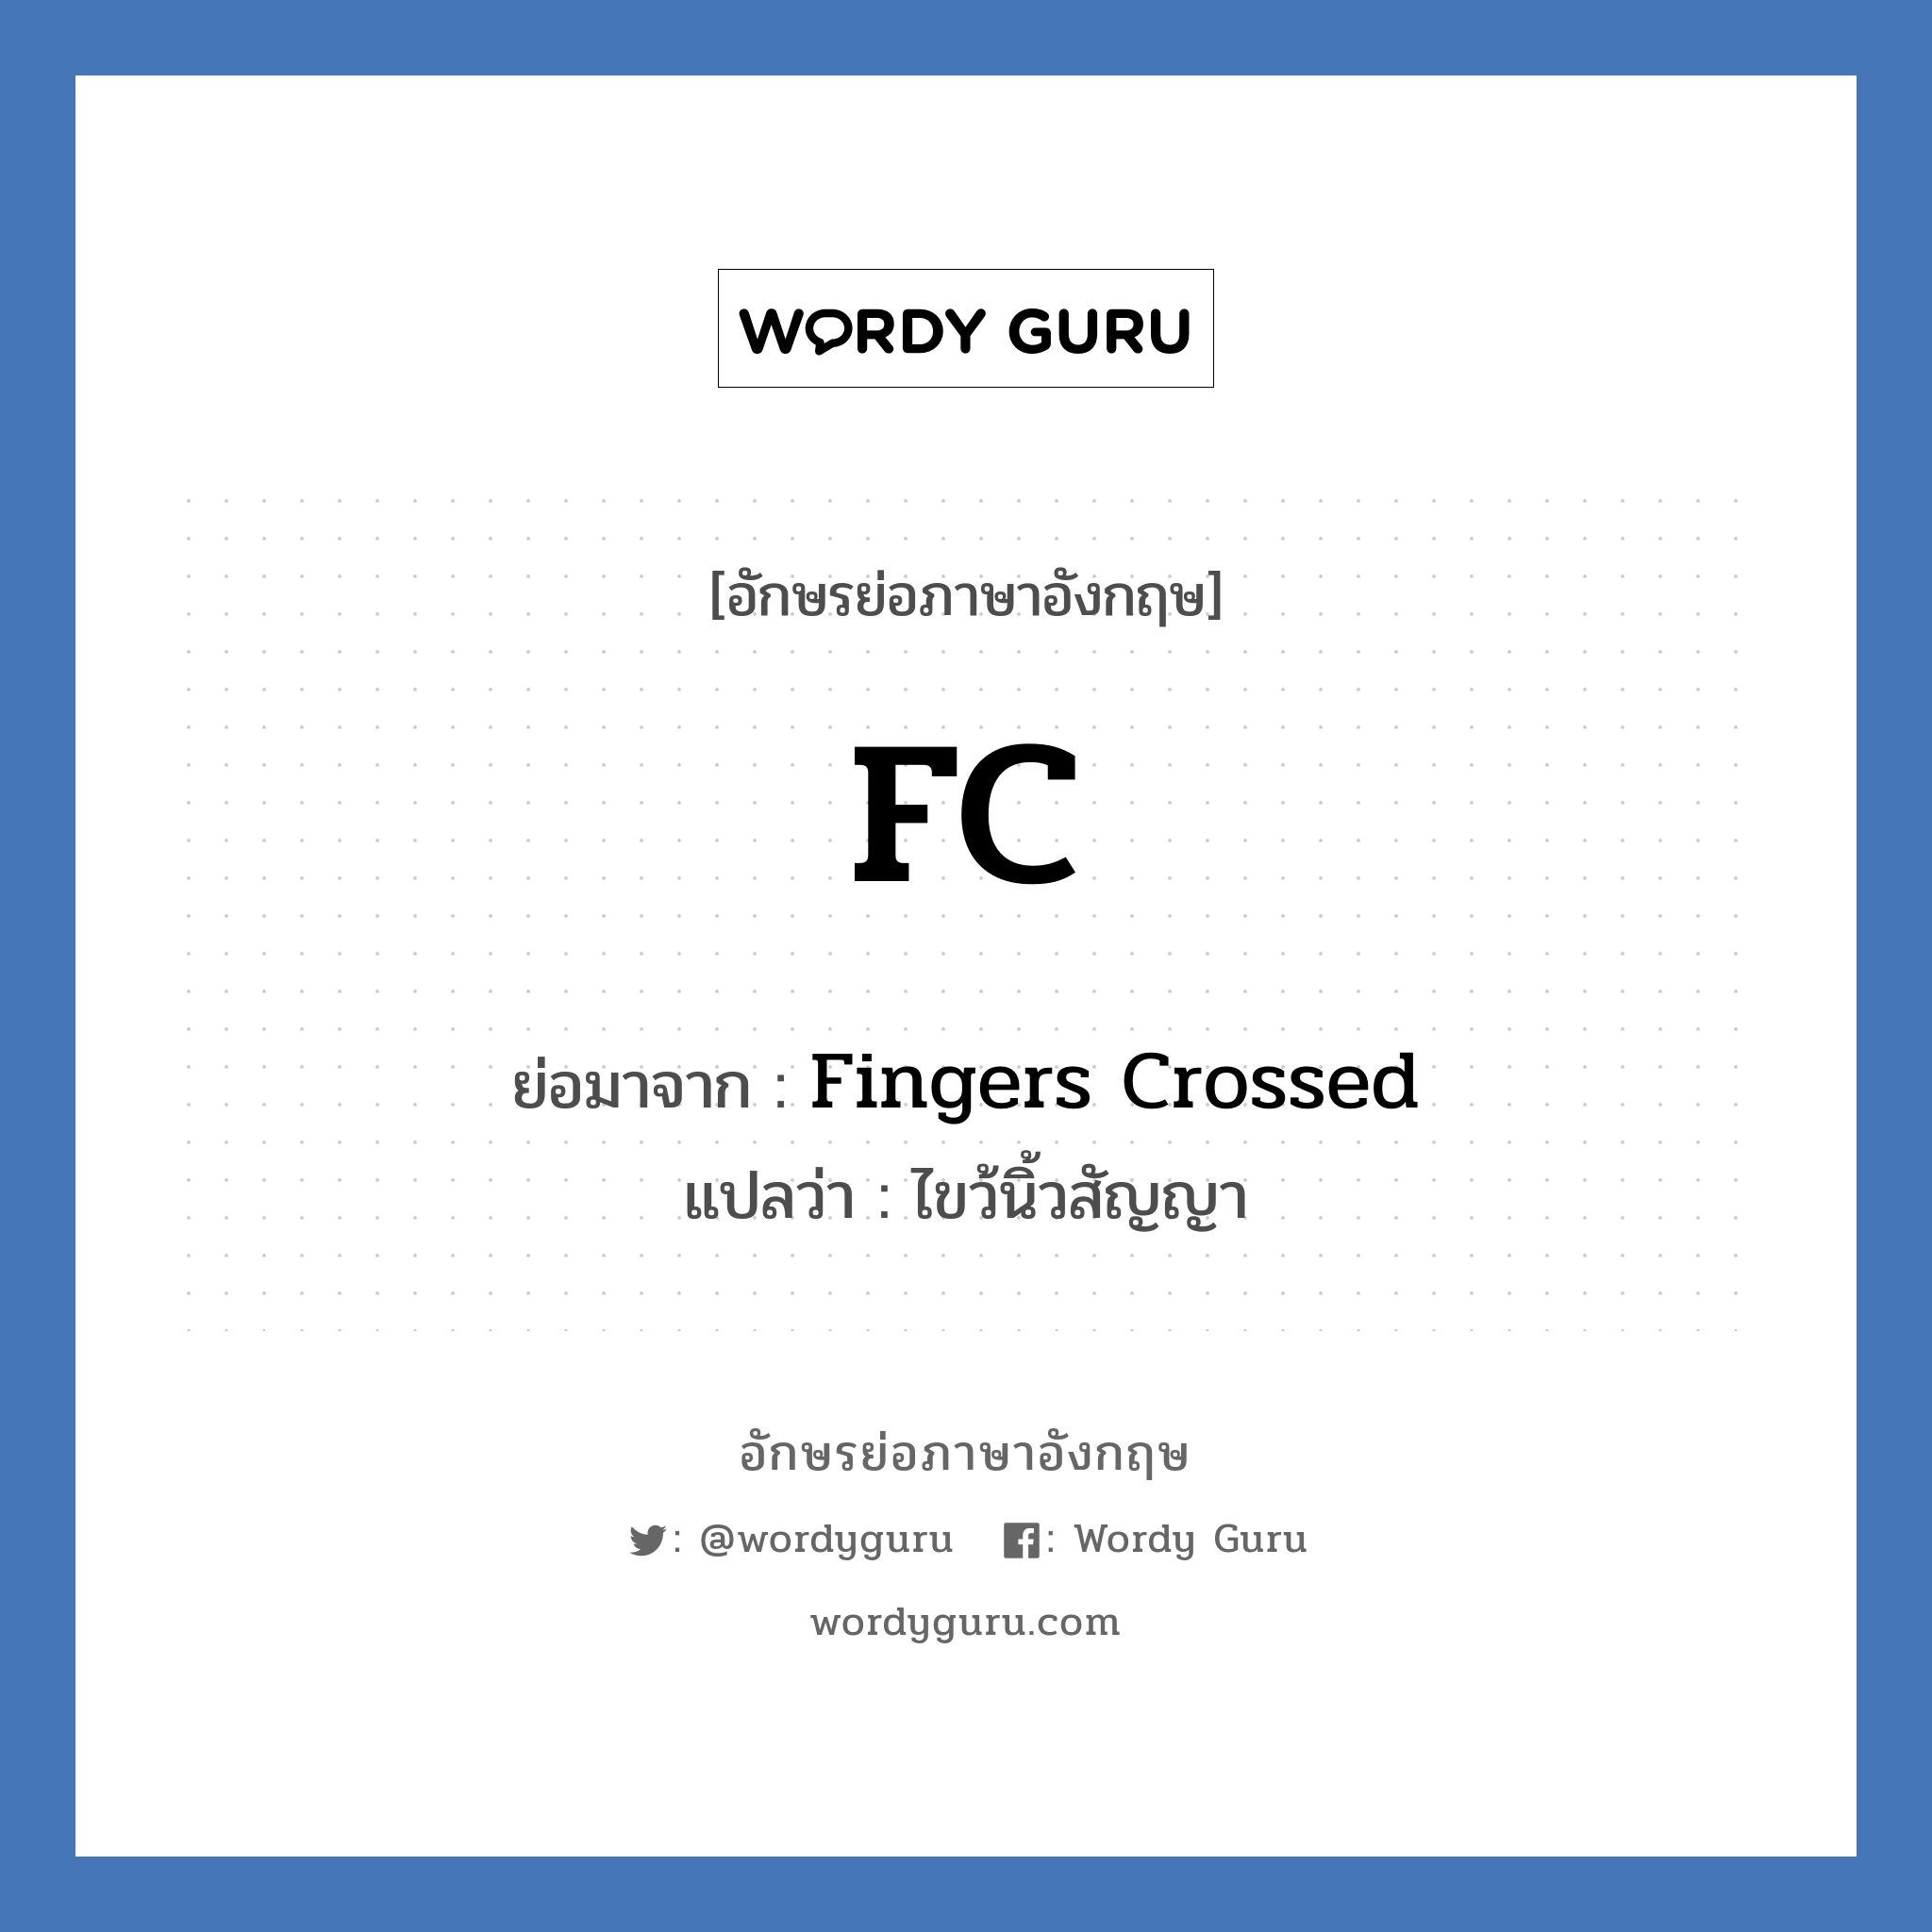 FC ย่อมาจาก? แปลว่า?, อักษรย่อภาษาอังกฤษ FC ย่อมาจาก Fingers Crossed แปลว่า ไขว้นิ้วสัญญา